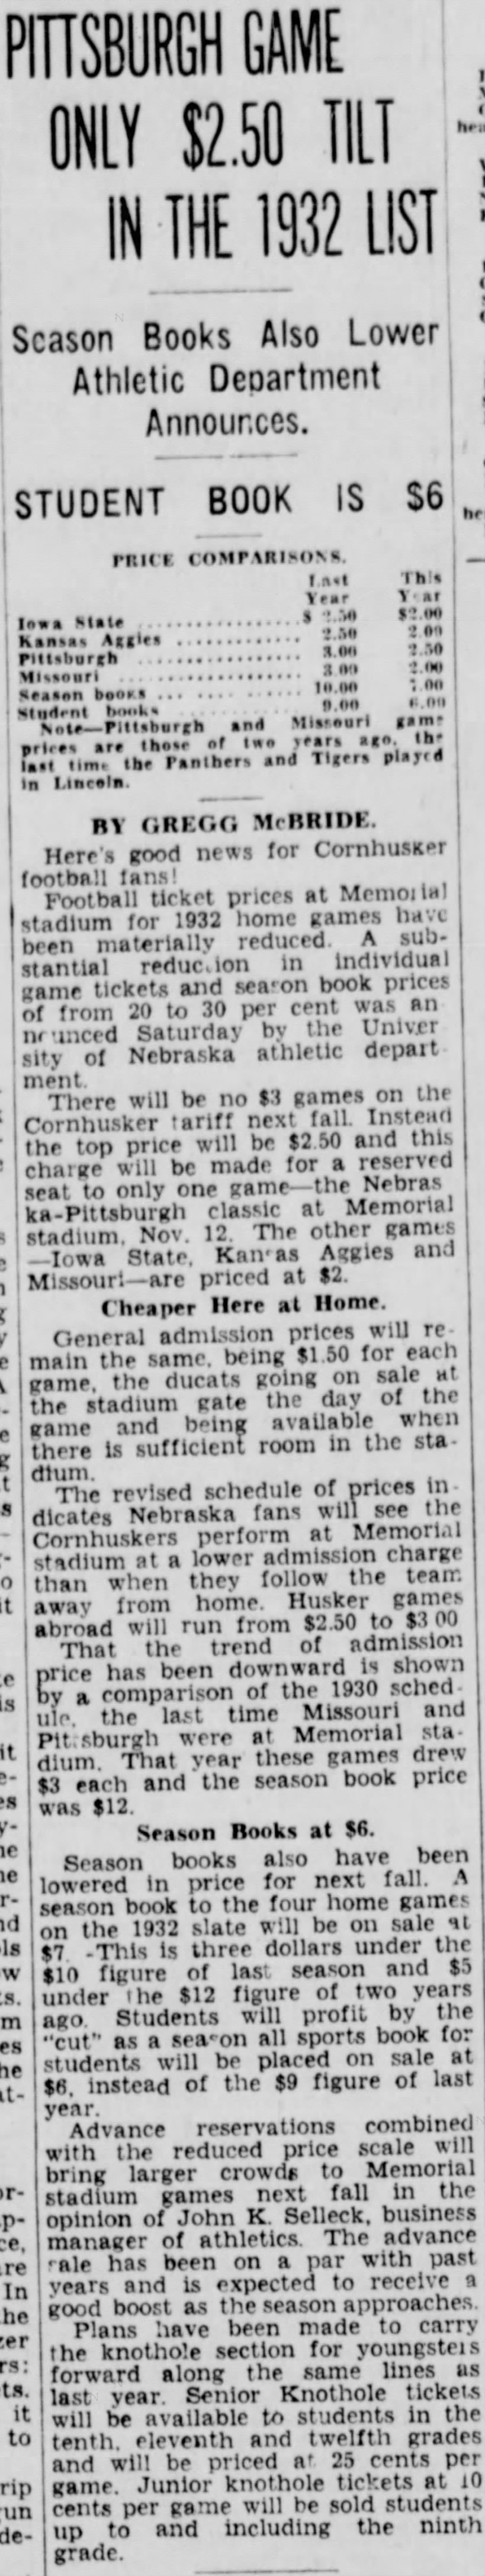 1932 Nebraska football ticket prices reduced